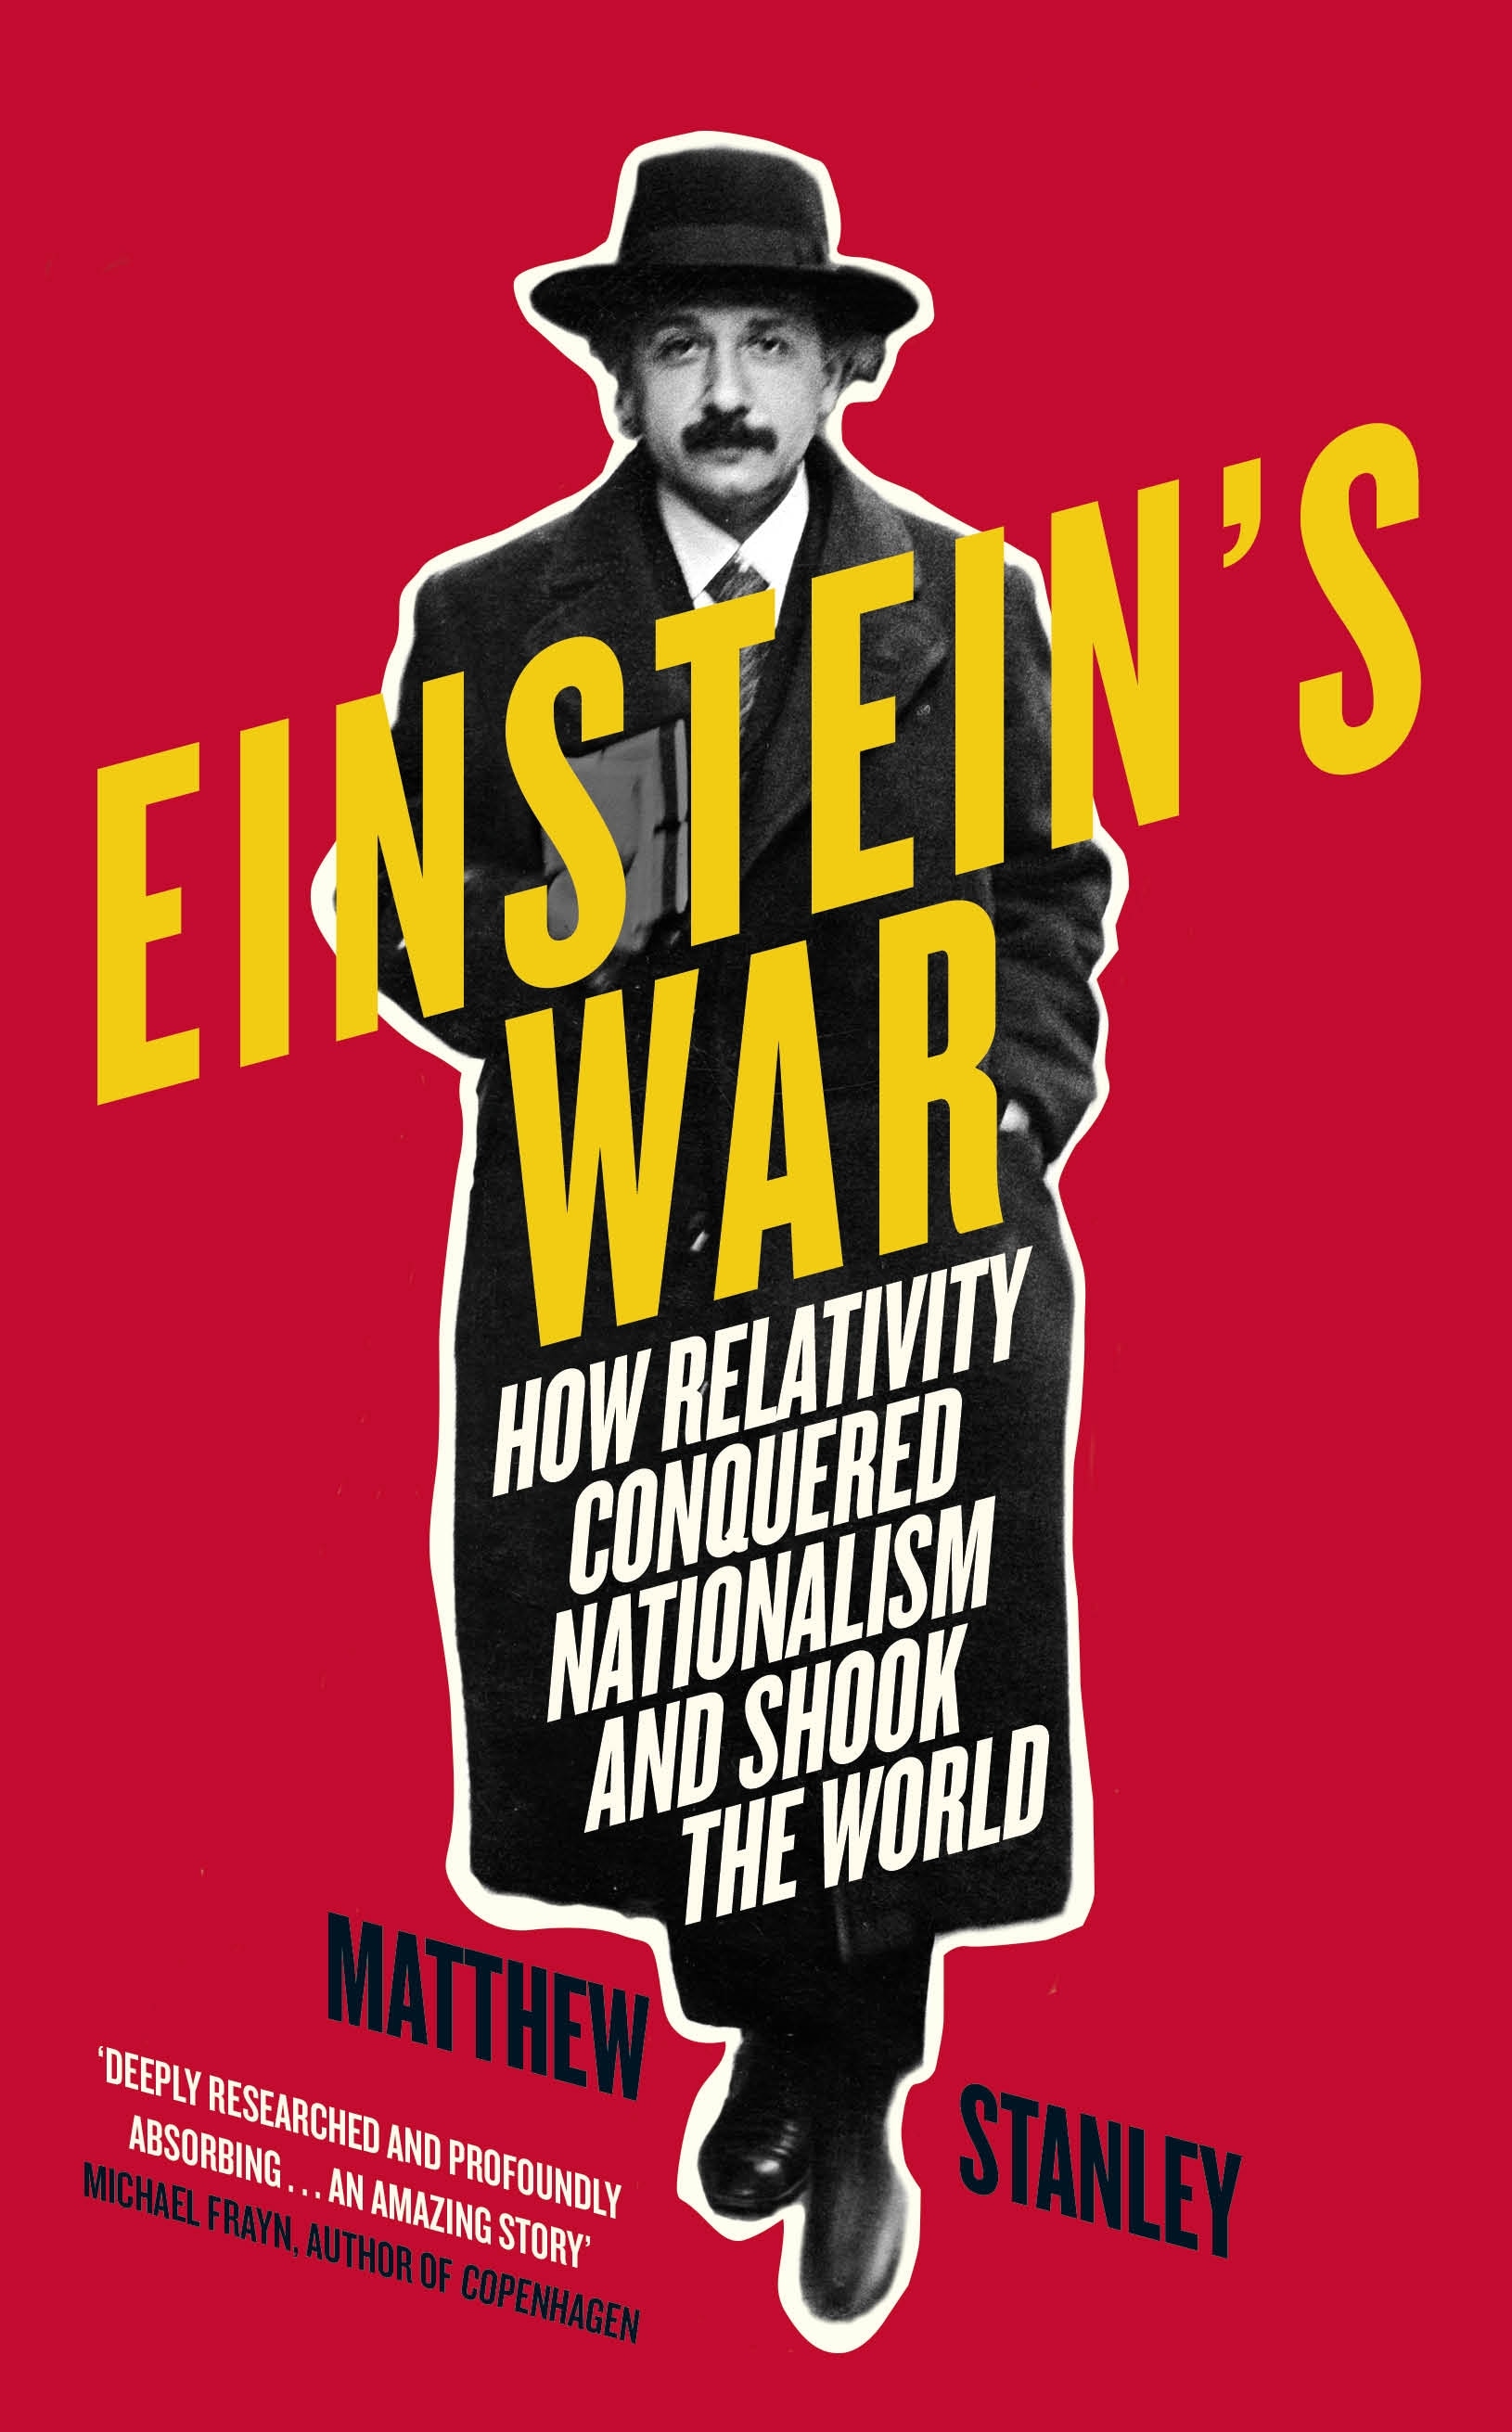 Book “Einstein's War” by Matthew Stanley — May 23, 2019